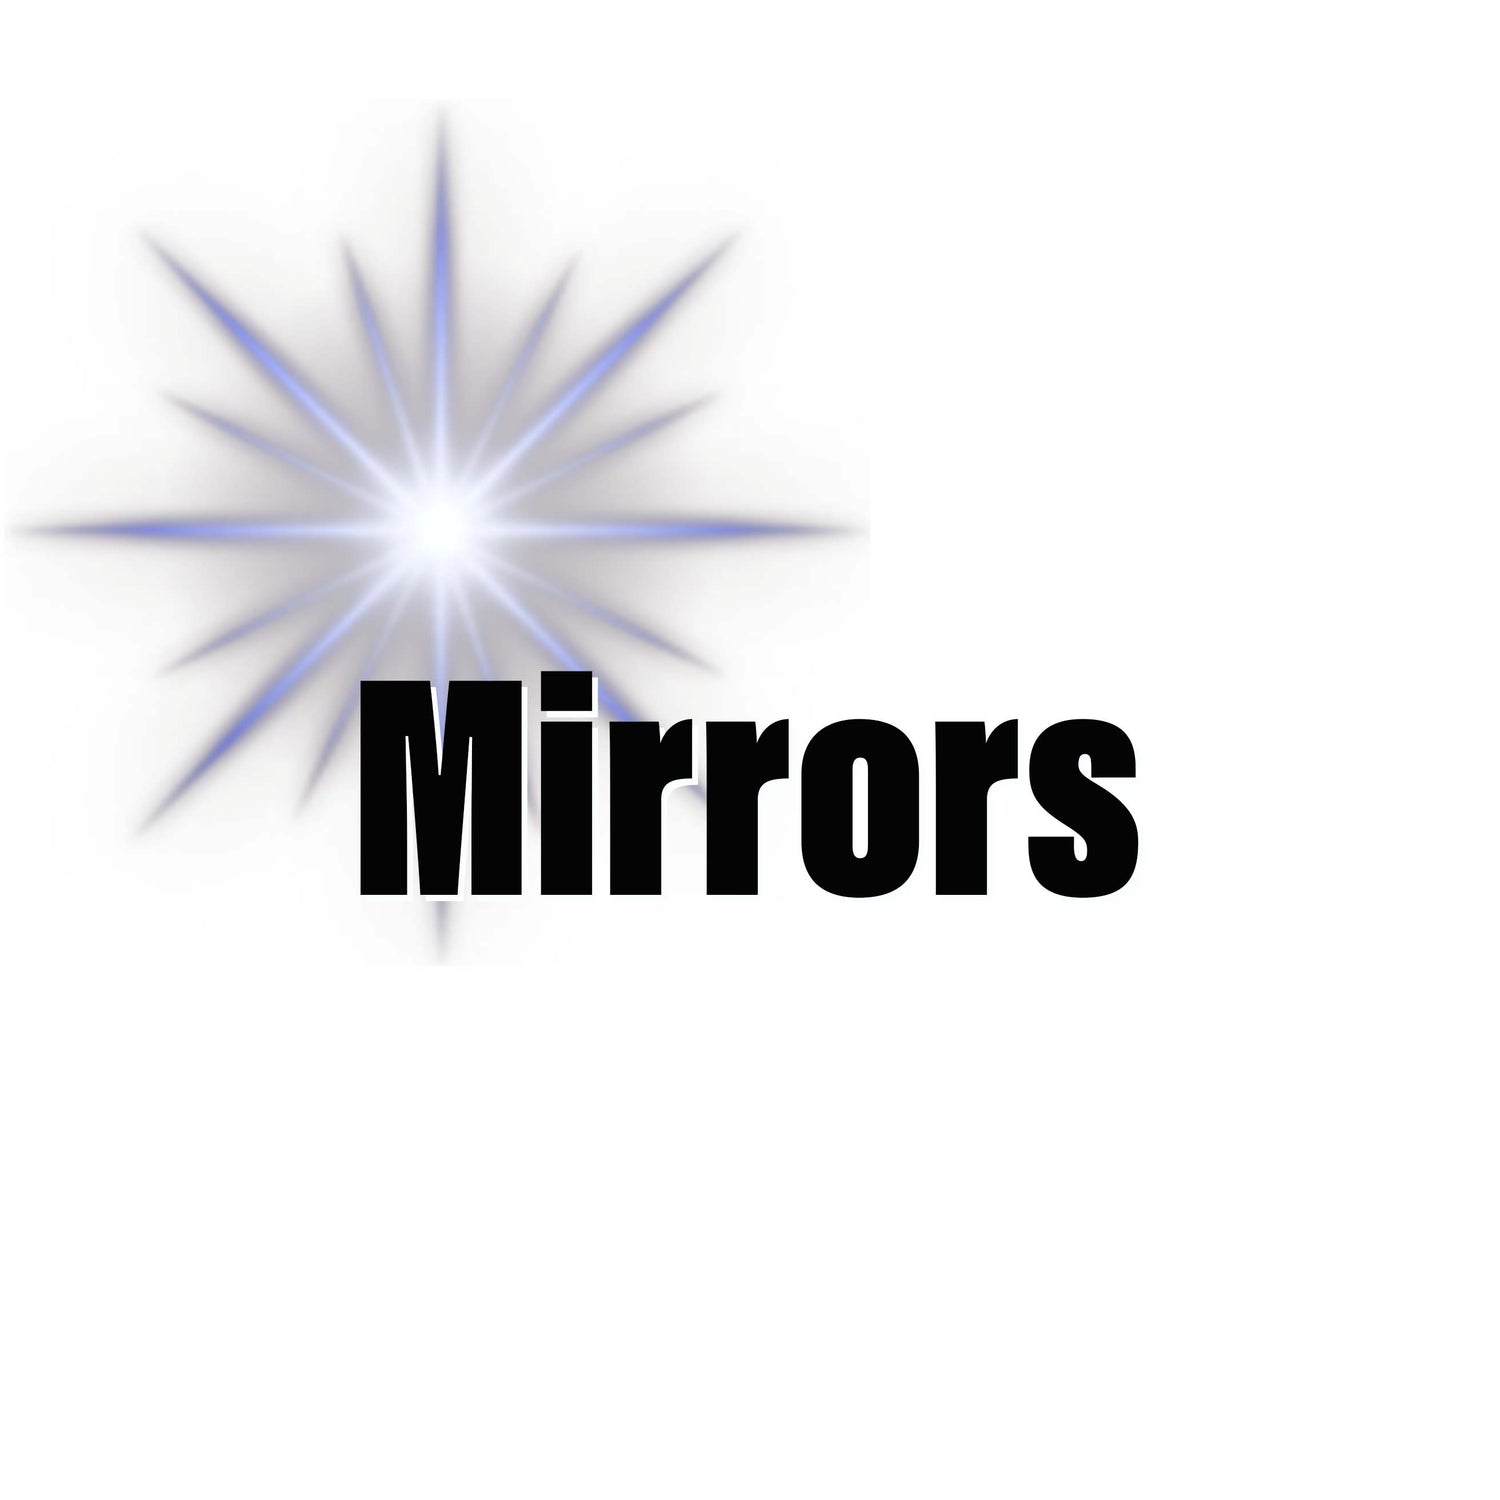 Mirrors Ignite